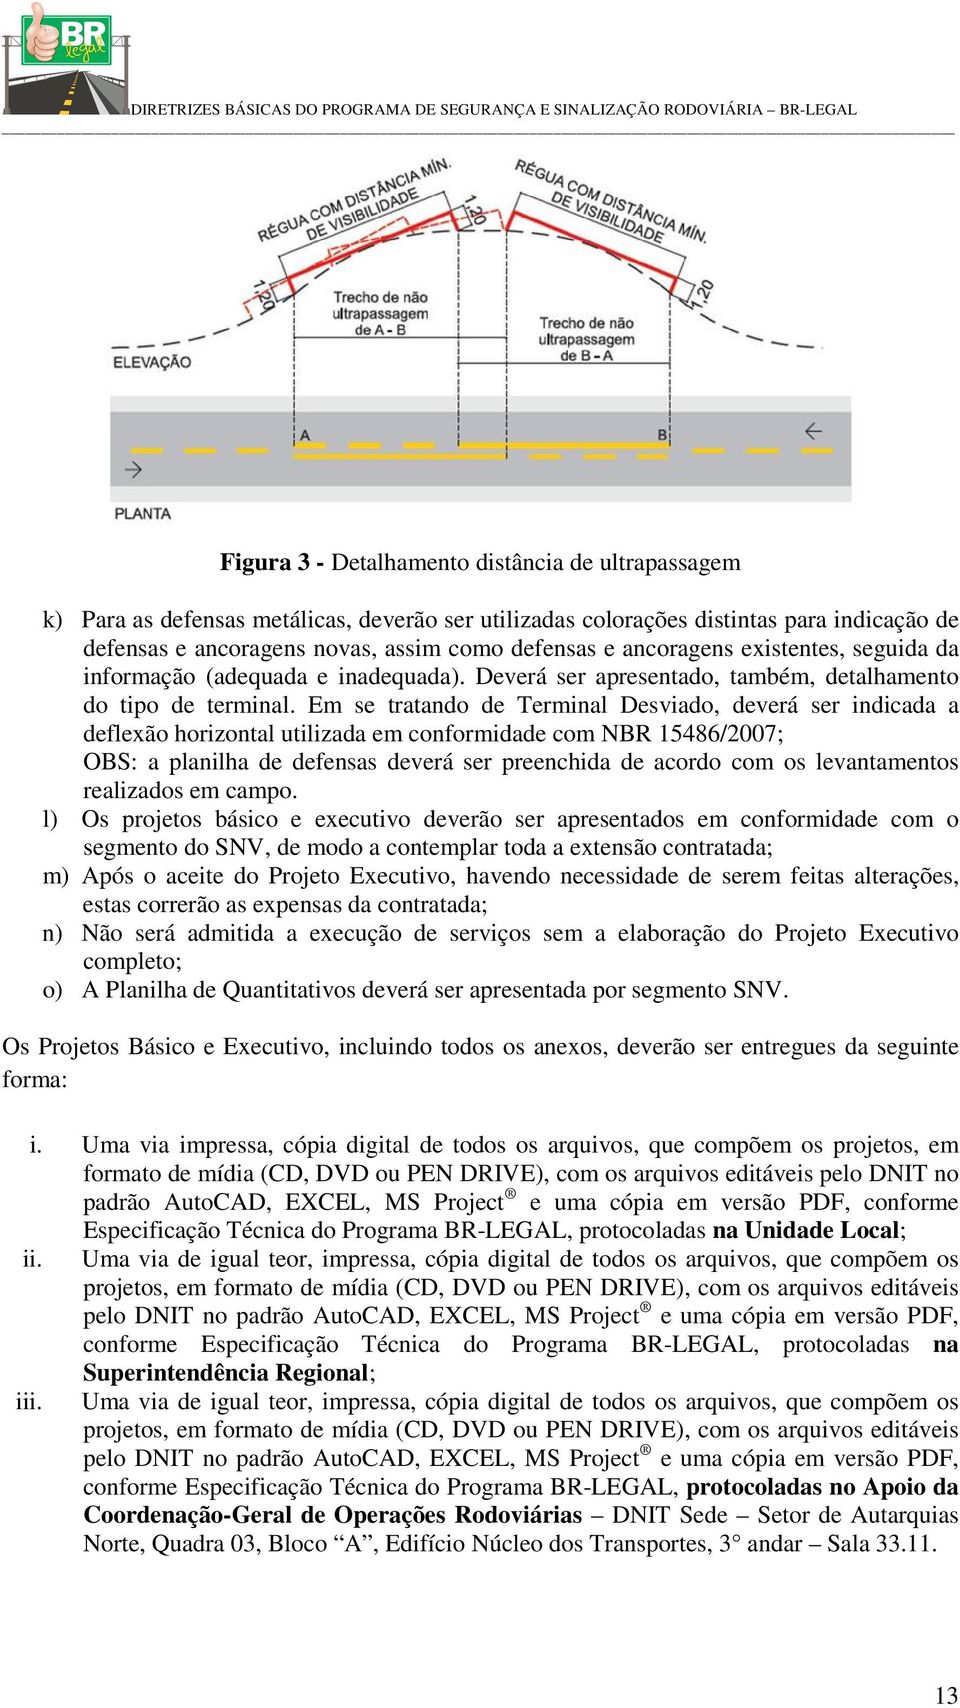 Em se tratando de Terminal Desviado, deverá ser indicada a deflexão horizontal utilizada em conformidade com NBR 15486/2007; OBS: a planilha de defensas deverá ser preenchida de acordo com os